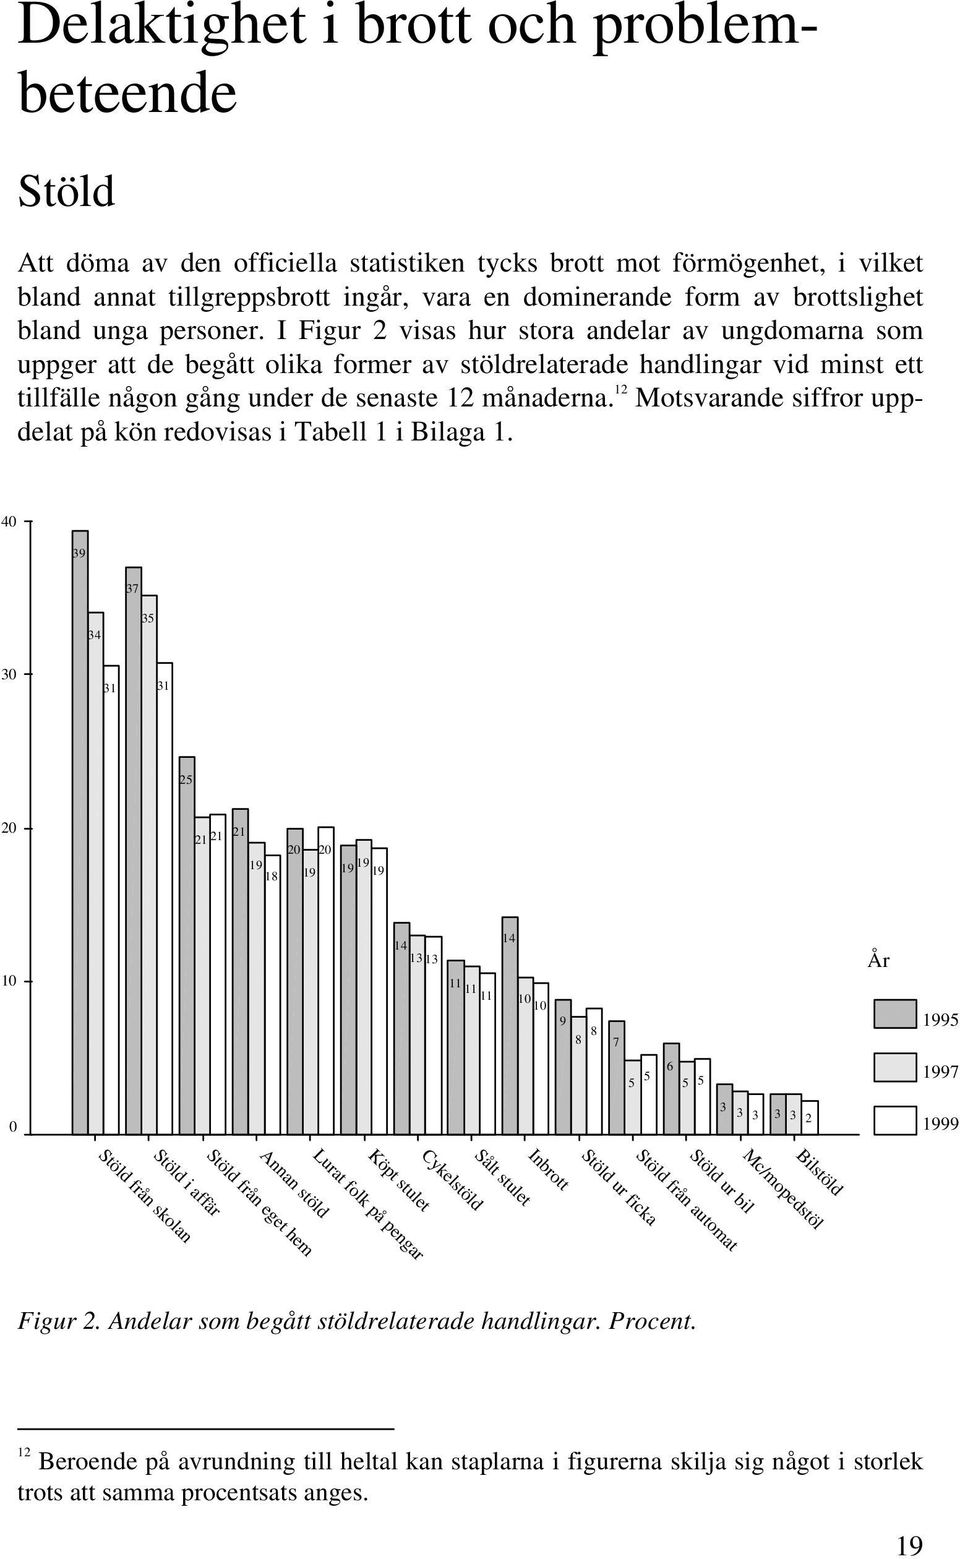 I Figur 2 visas hur stora andelar av ungdomarna som uppger att de begått olika former av stöldrelaterade handlingar vid minst ett tillfälle någon gång under de senaste 12 månaderna.